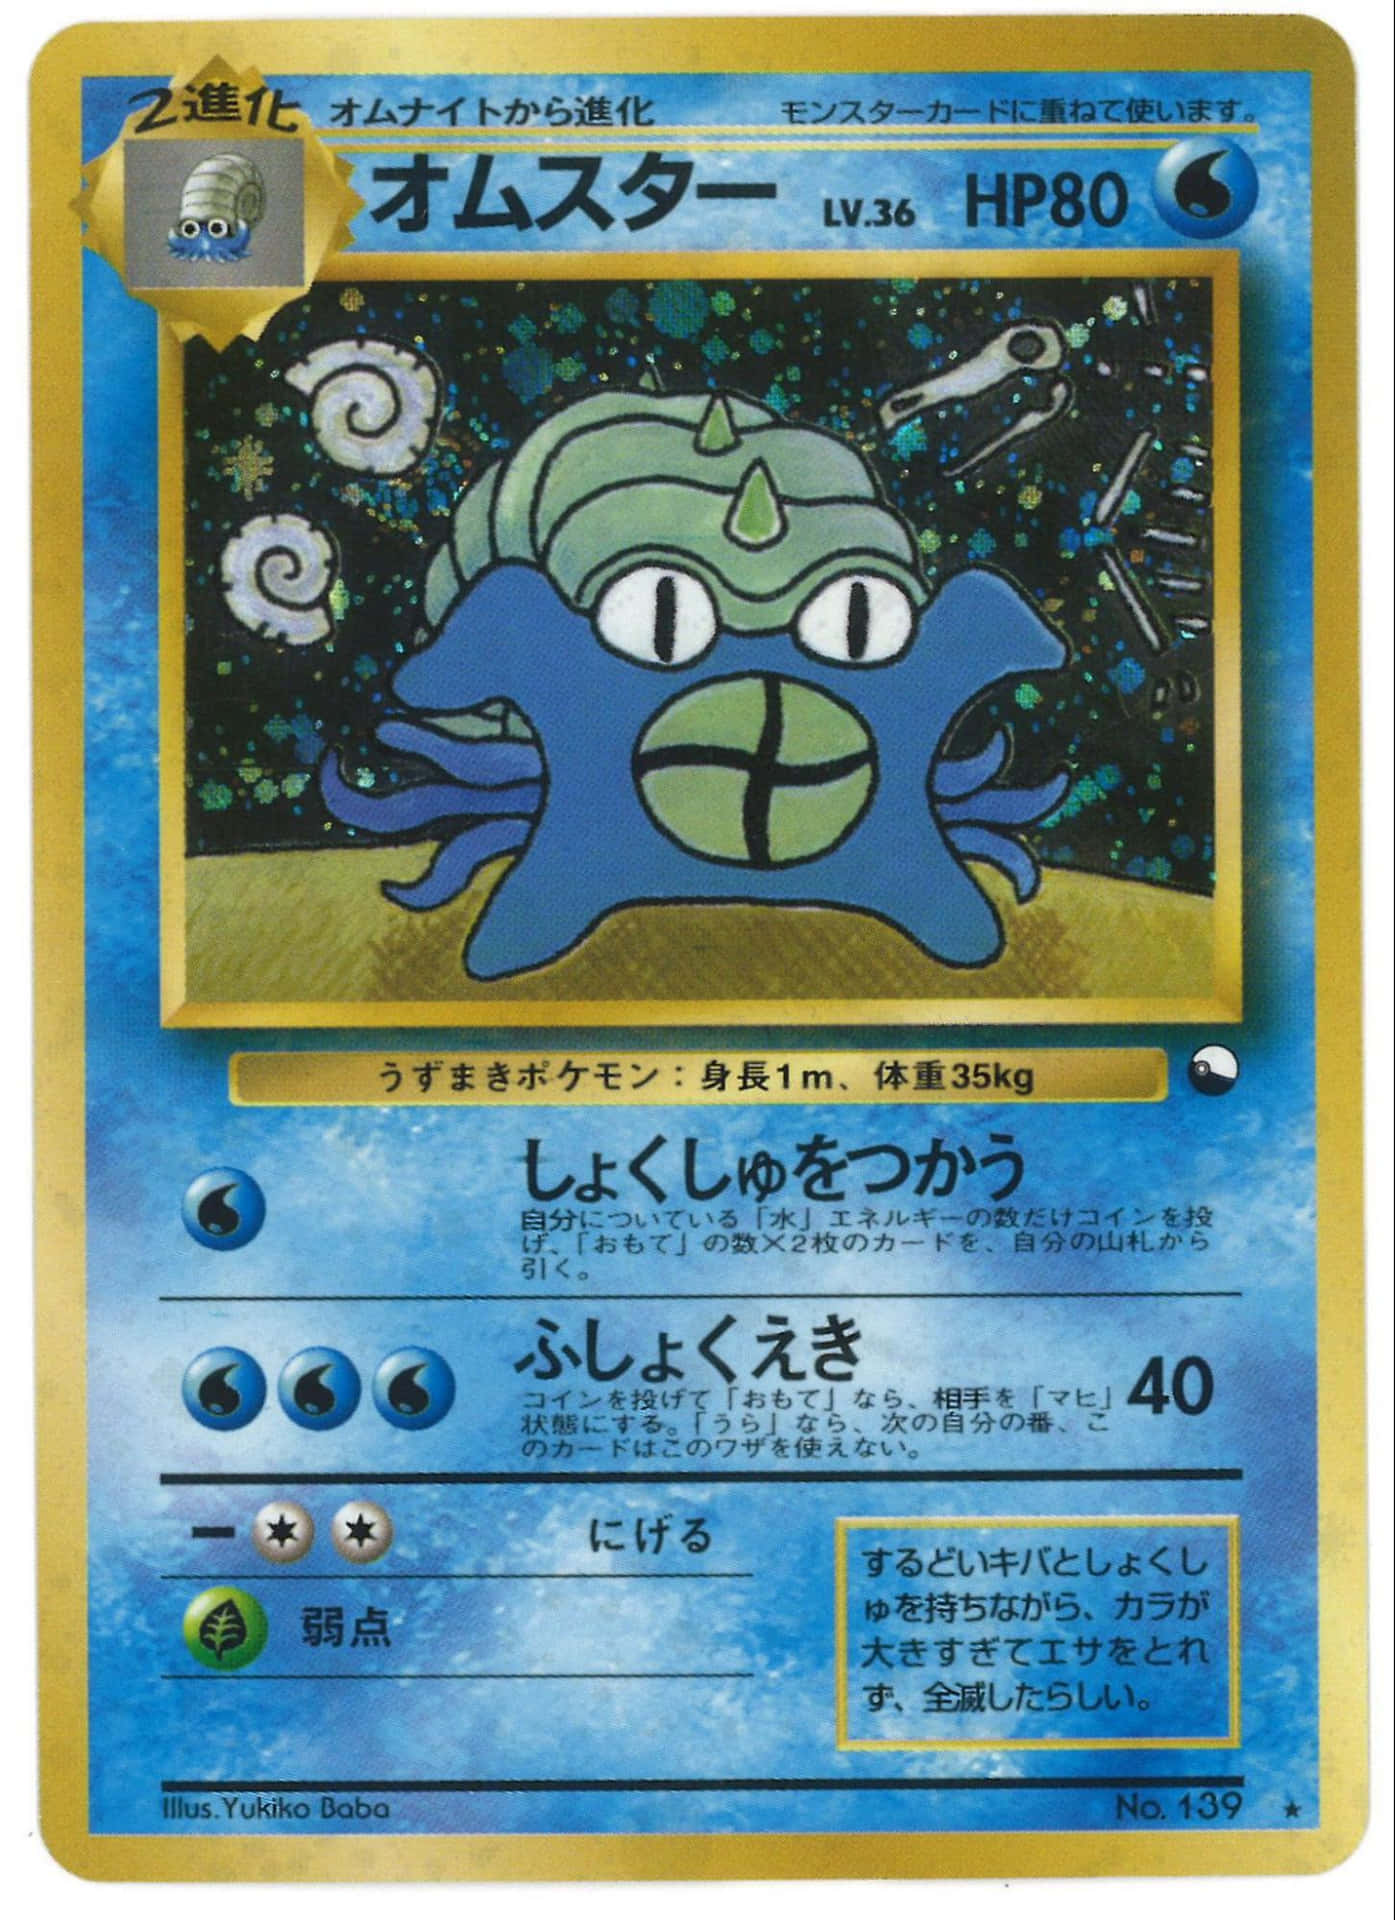 Omastar Pokémon Card In Japanese Wallpaper